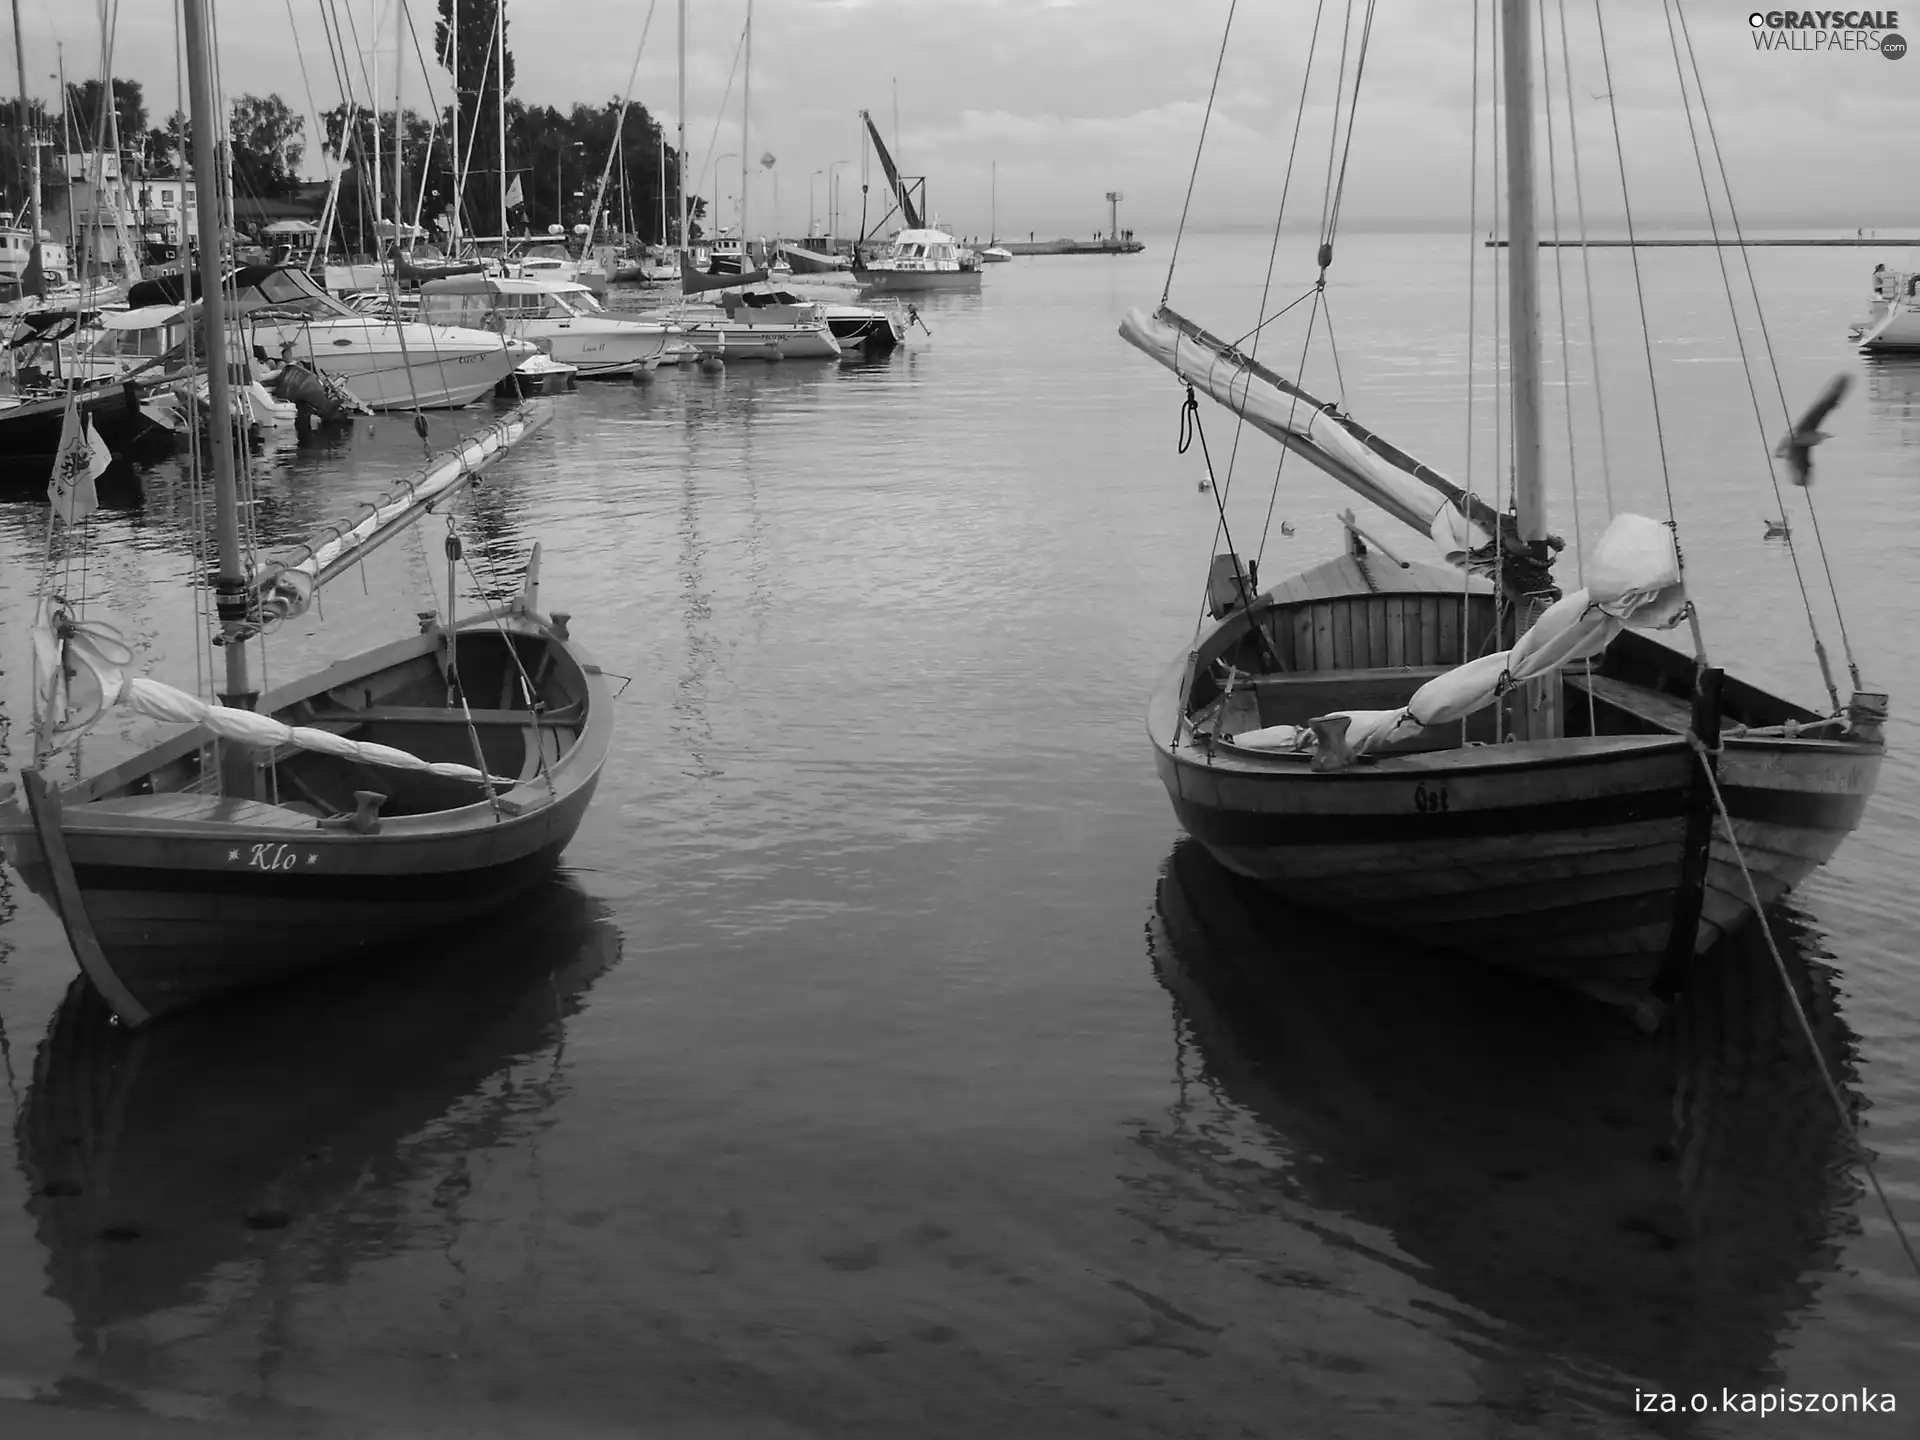 jastarnia, boats, sea